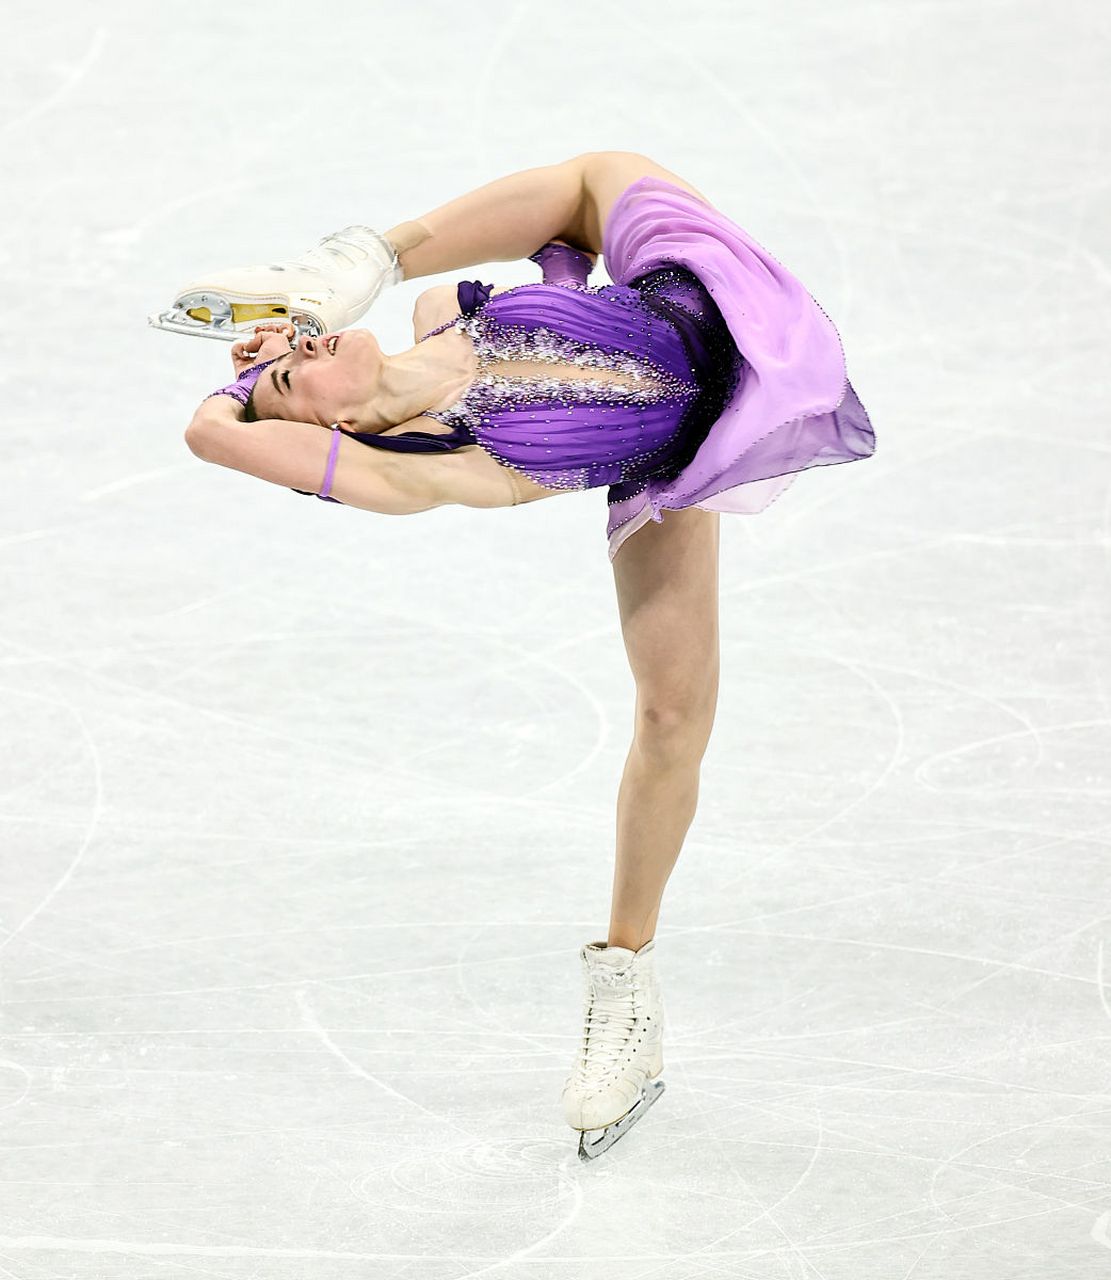 震惊,惋惜……俄罗斯花样滑冰运动员卡米拉·瓦利耶娃,被俄国家队除名